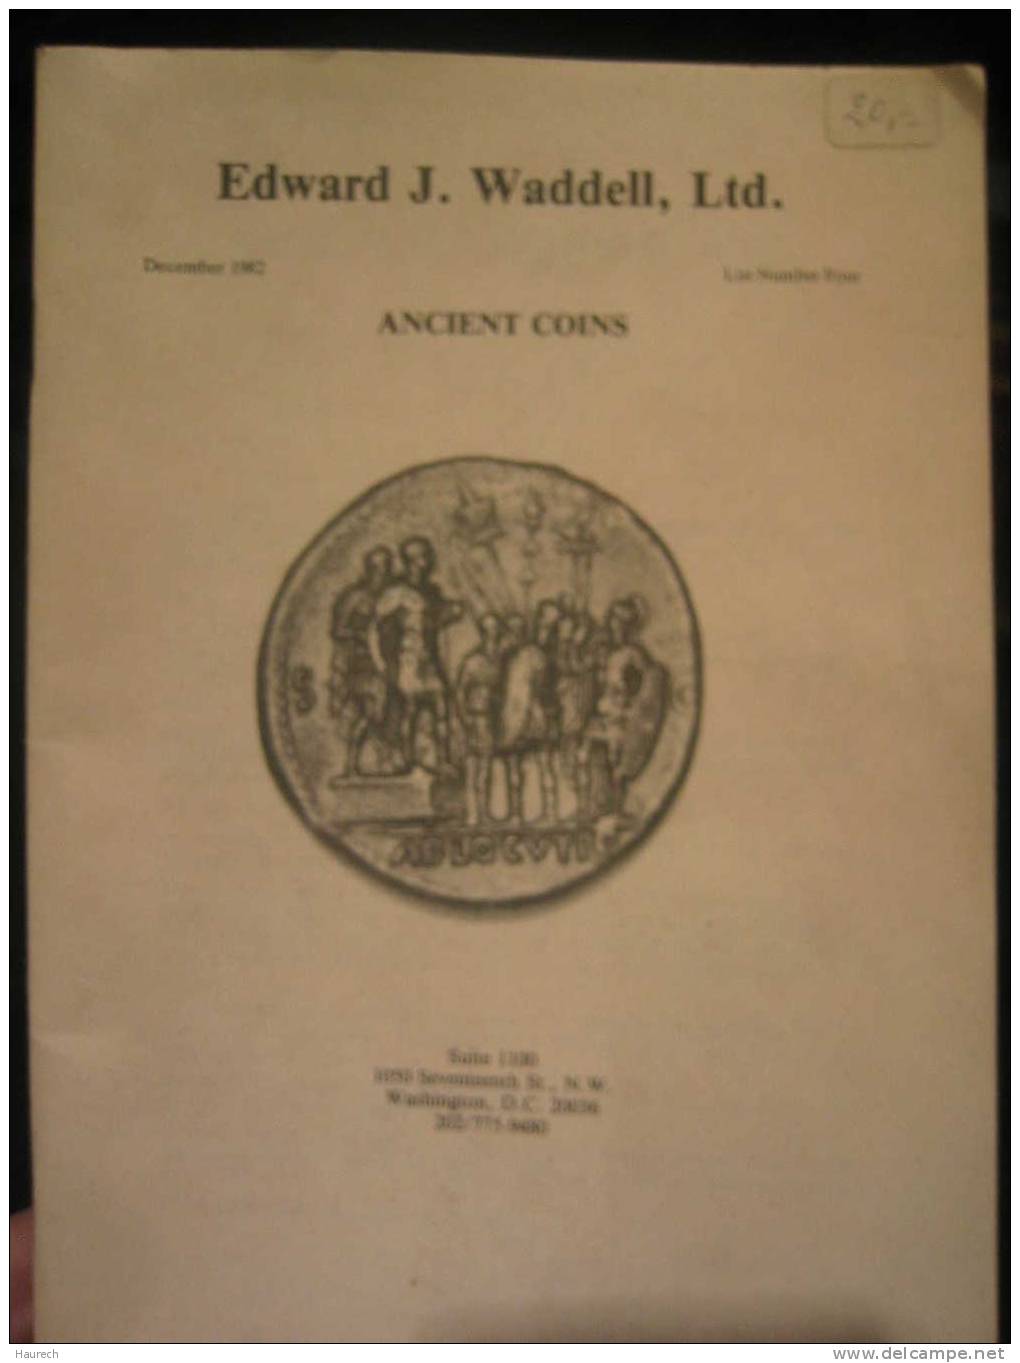 Ancient Coins, Edward J. Waddell, Décembre 1982 - Boeken & Software